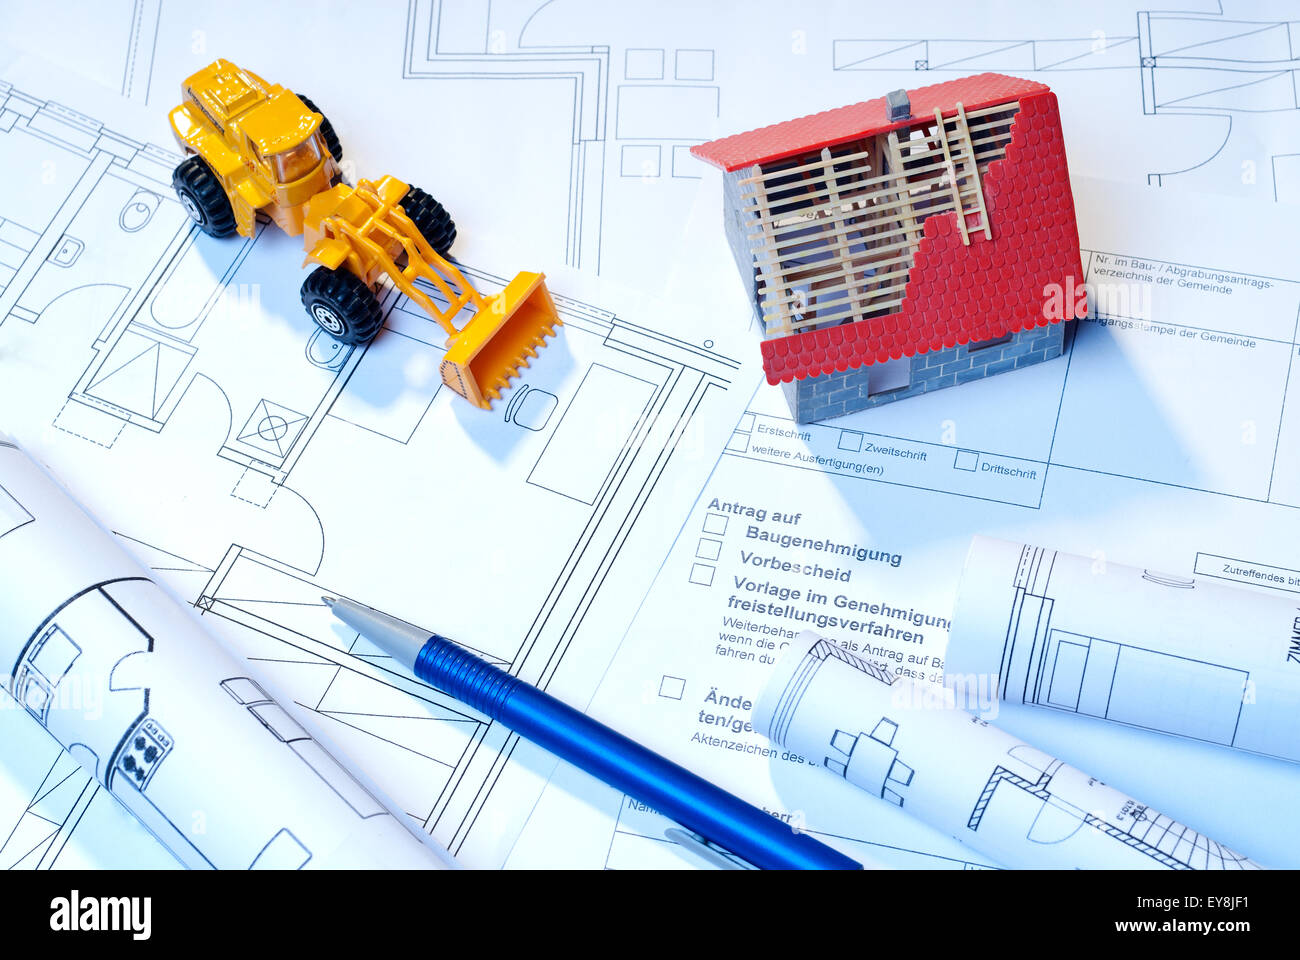 Baupläne, Architekturmodell und Spielzeug Bagger als Symbole für den Bau. Stockfoto